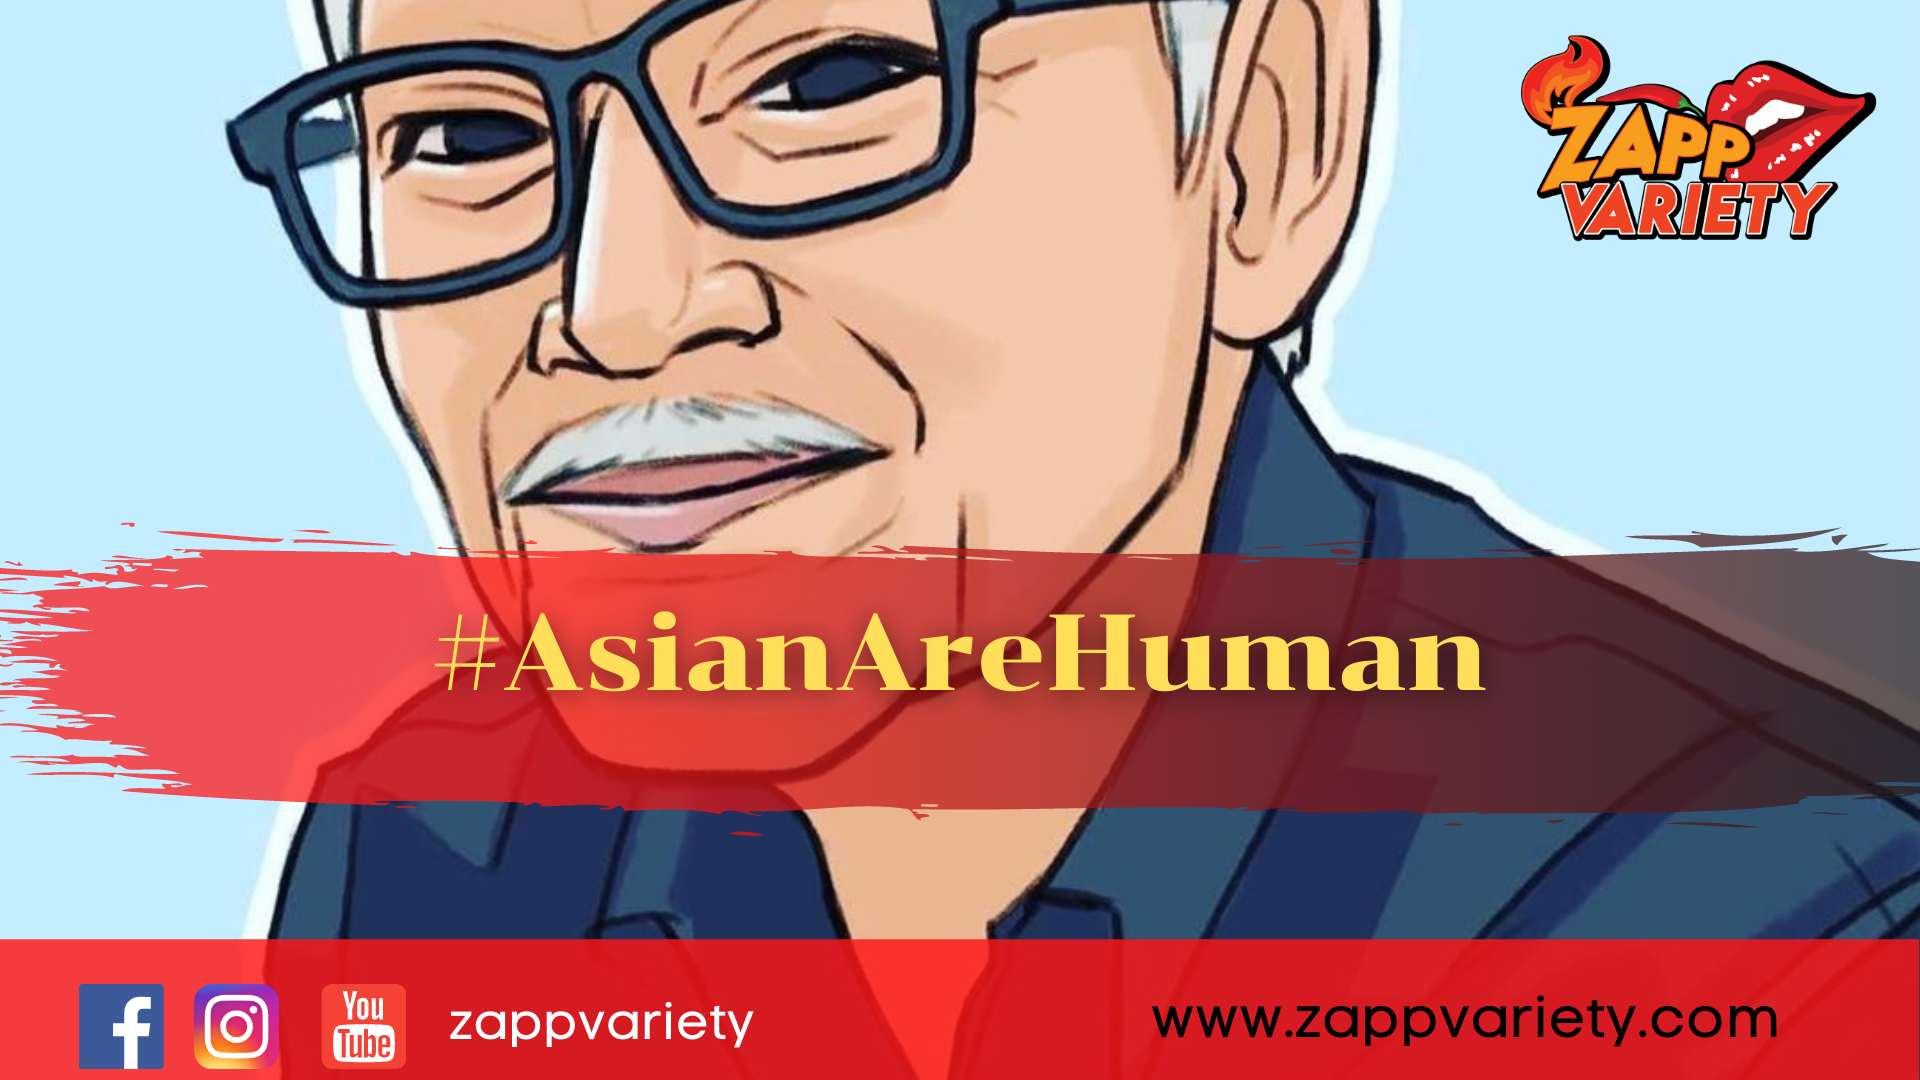 ติดแฮชแท็ก #AsianAreHuman ต่อต้านการเหยียดเชื้อชาติเอเชียทั่วโลก